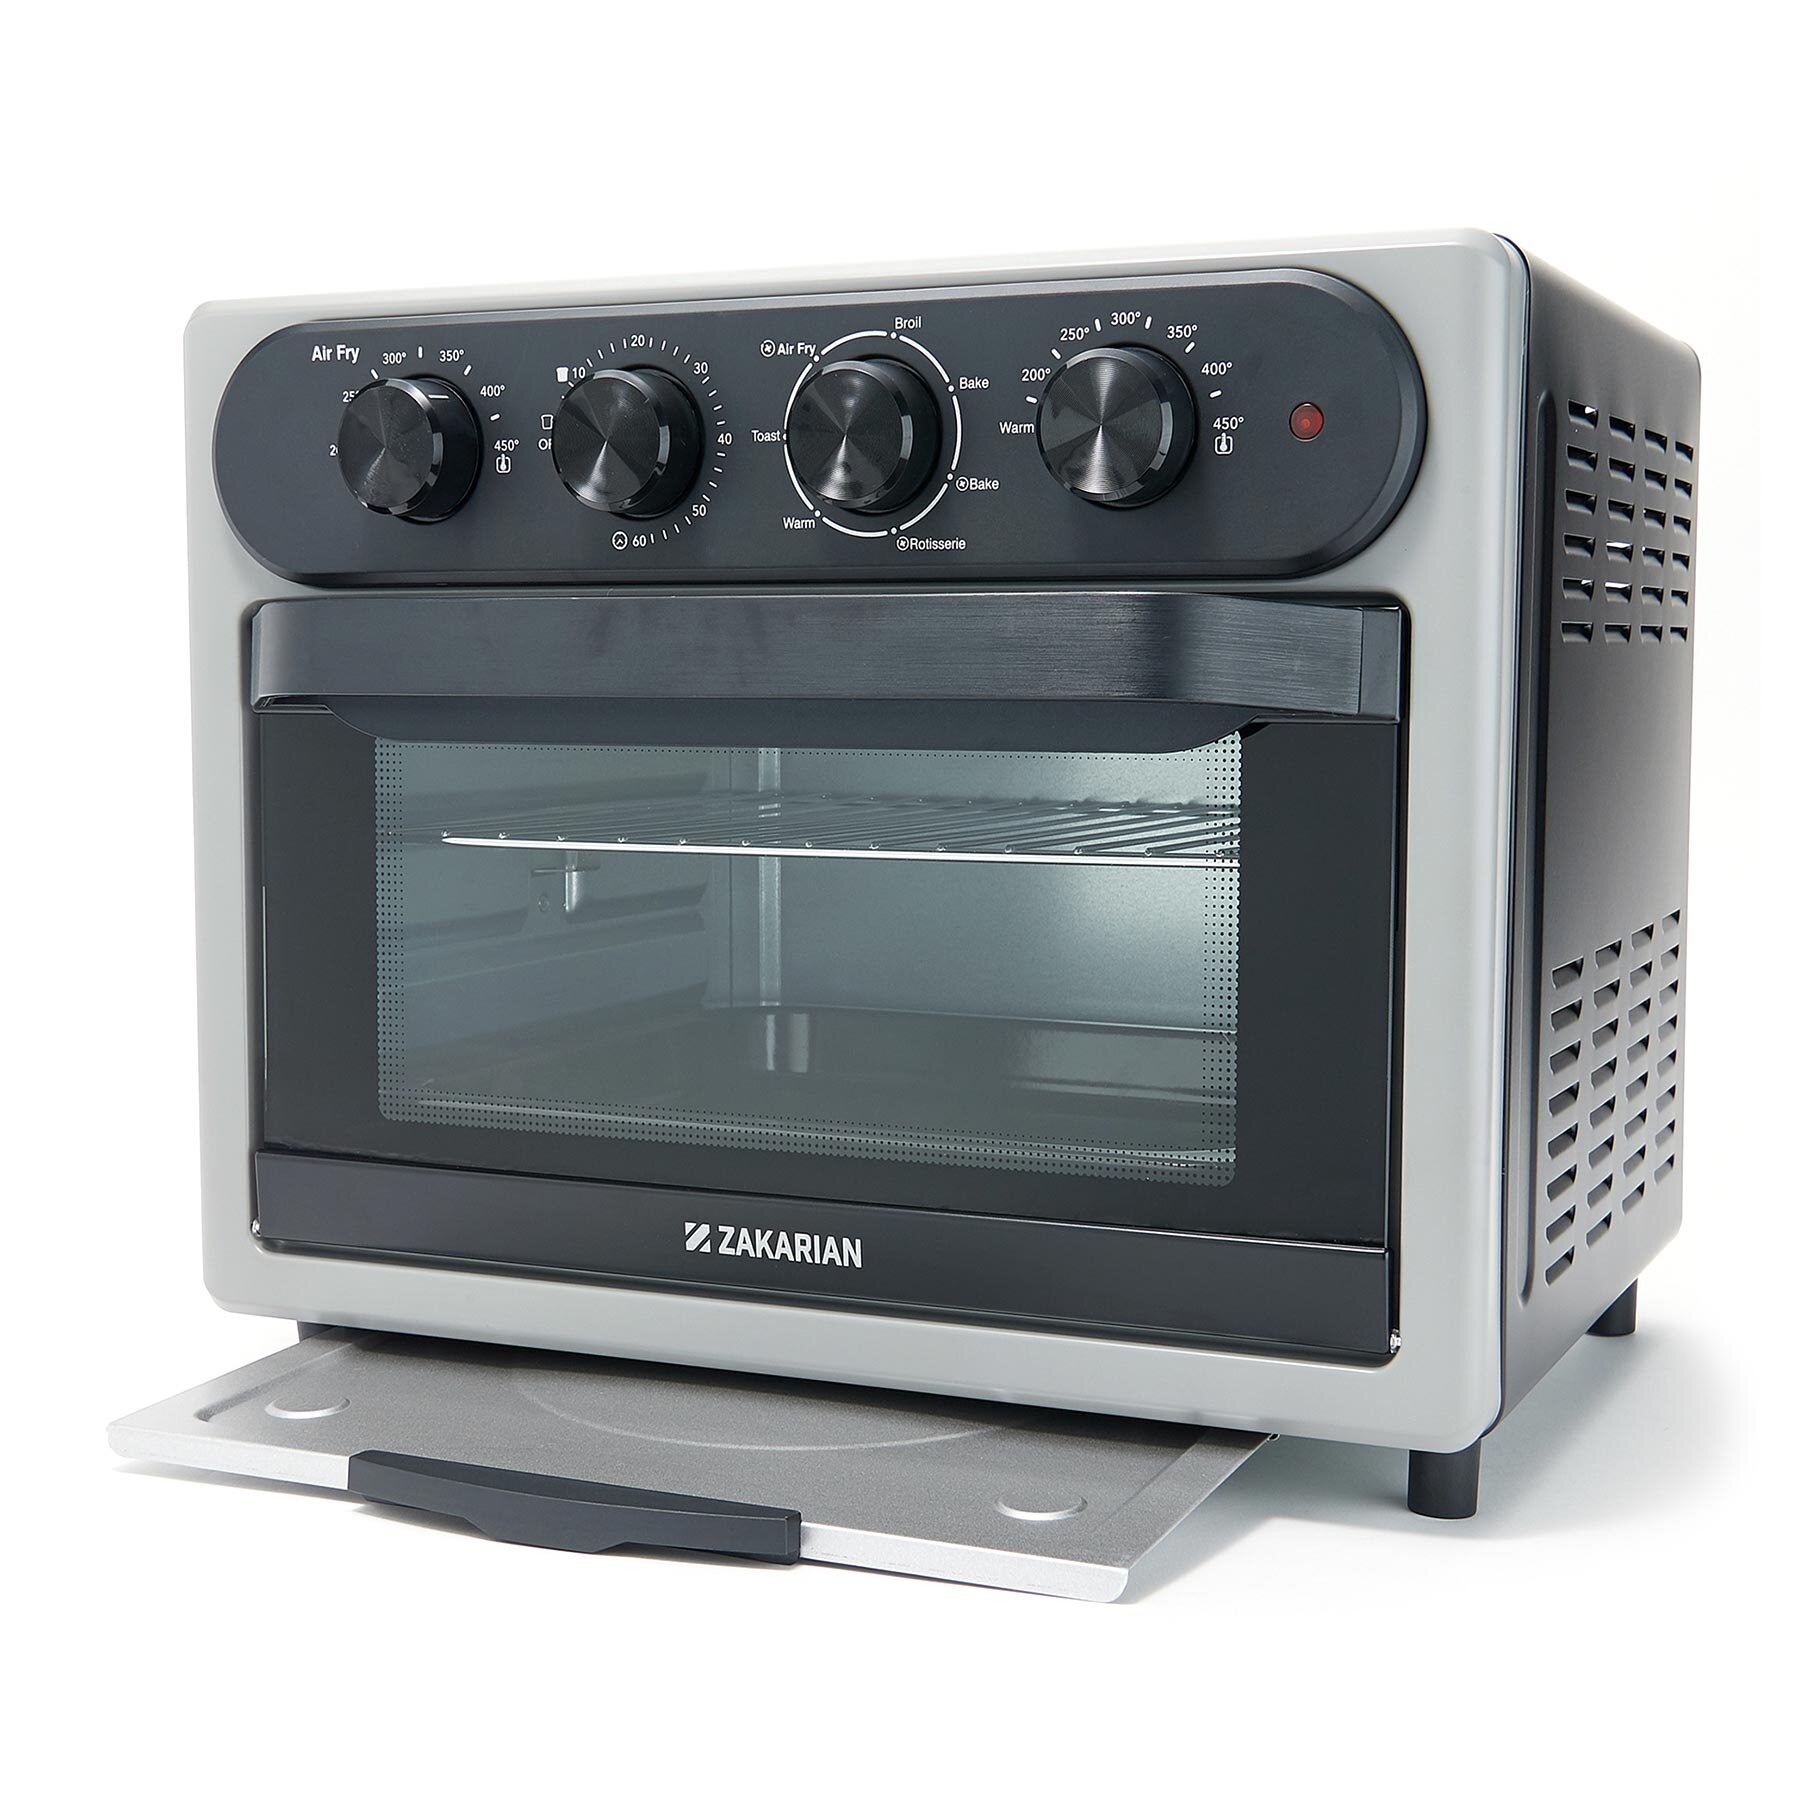 Black *New* Iron Chef Geoffrey Zakarian Air Fryer Oven w/ Aircrisp Technology 